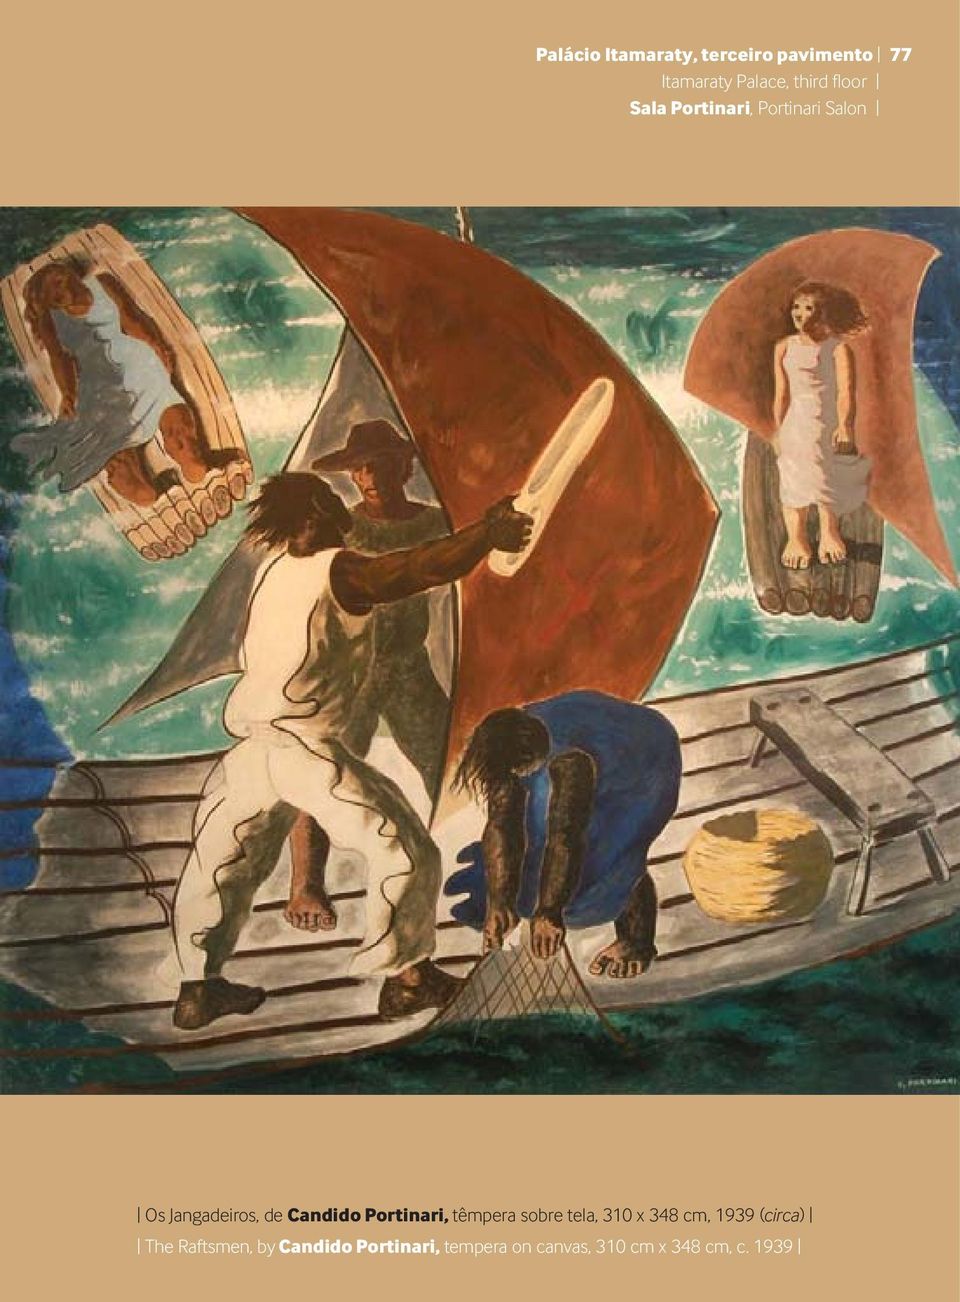 Portinari, têmpera sobre tela, 310 x 348 cm, 1939 (circa) The